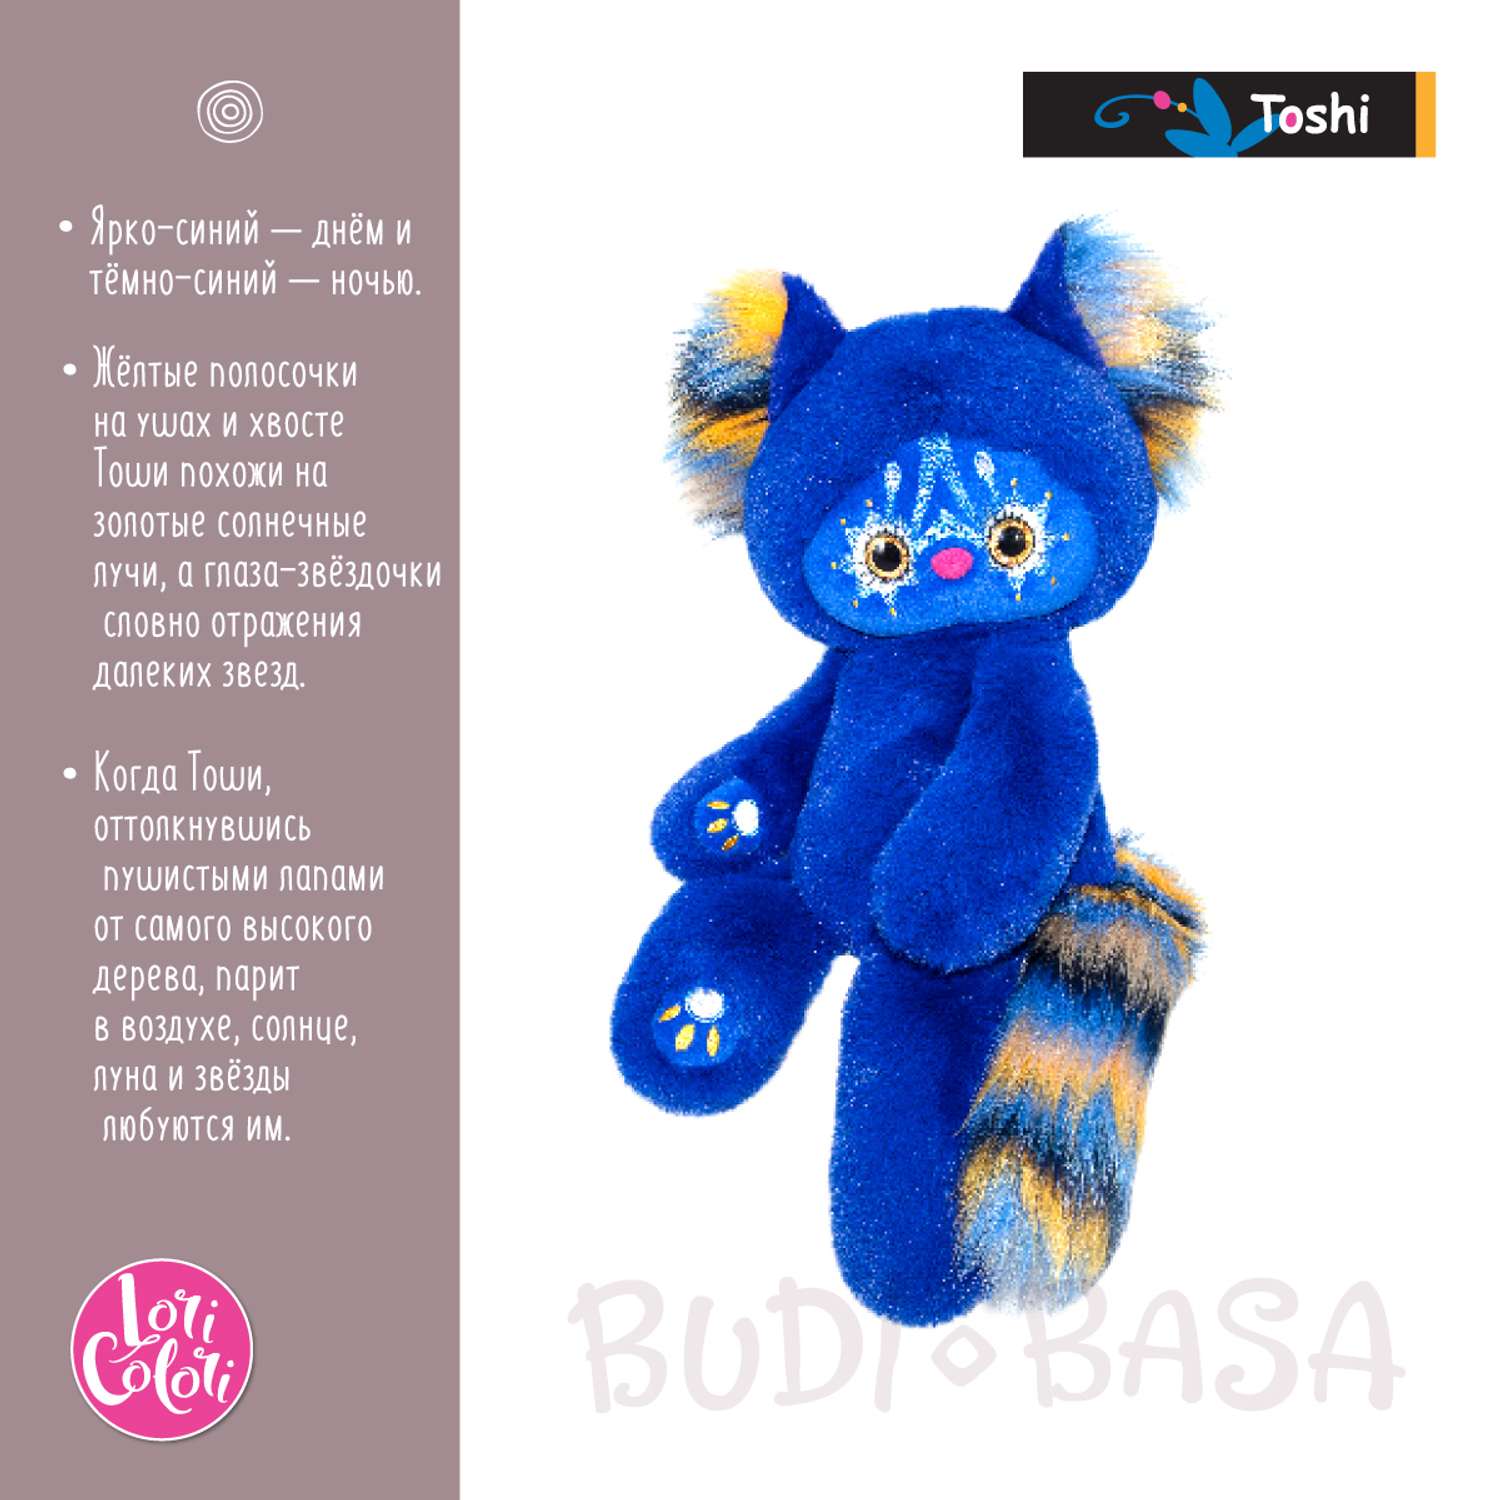 Мягкая игрушка BUDI BASA Лори Колори Тоши синий 30 см LR30-07 - фото 2